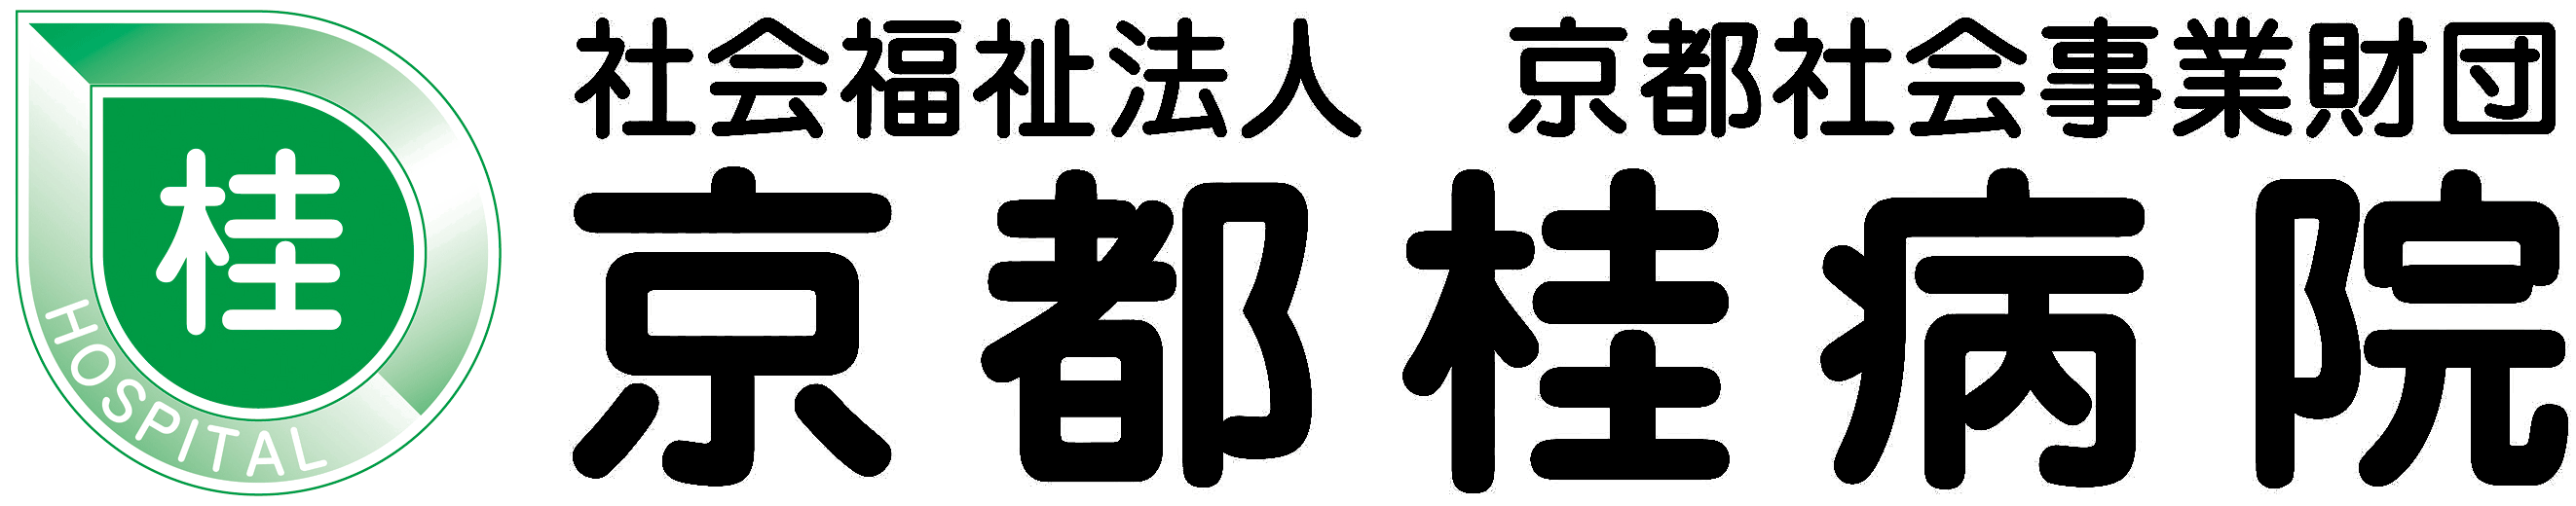 京都桂病院のロゴ